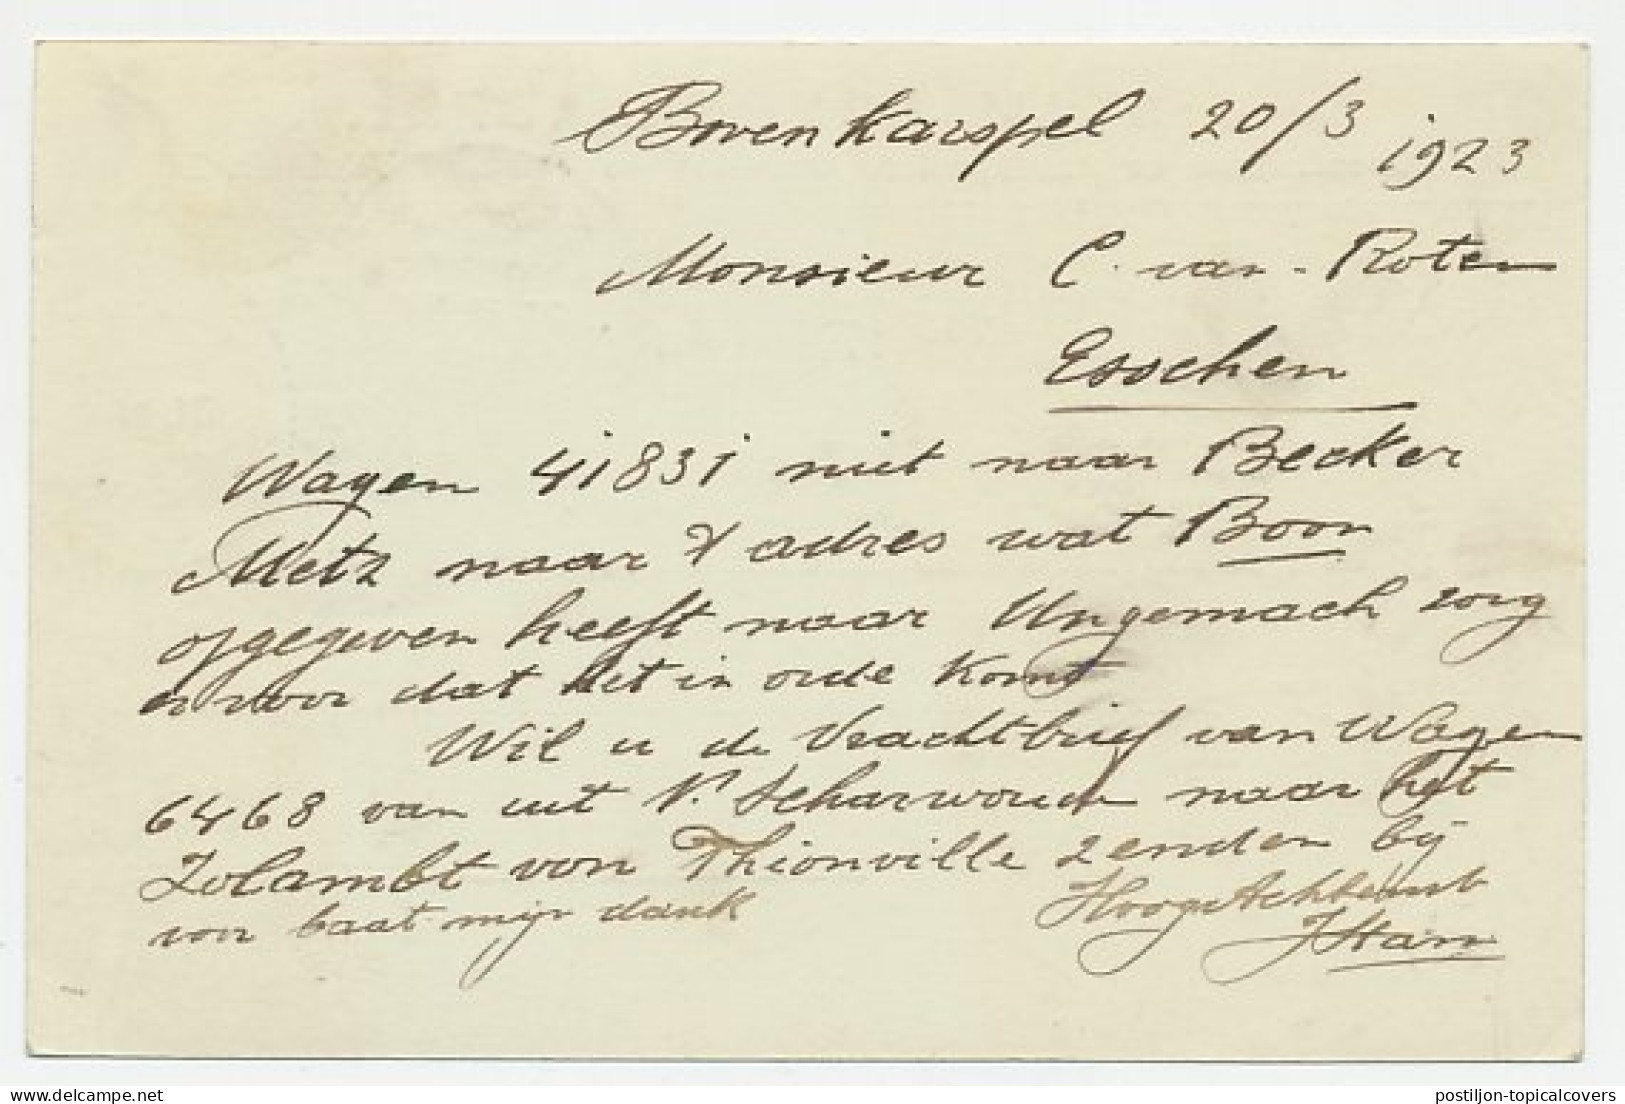 Firma Briefkaart Bovenkarspel 1923 - Aardappelen / Groenten  - Non Classés